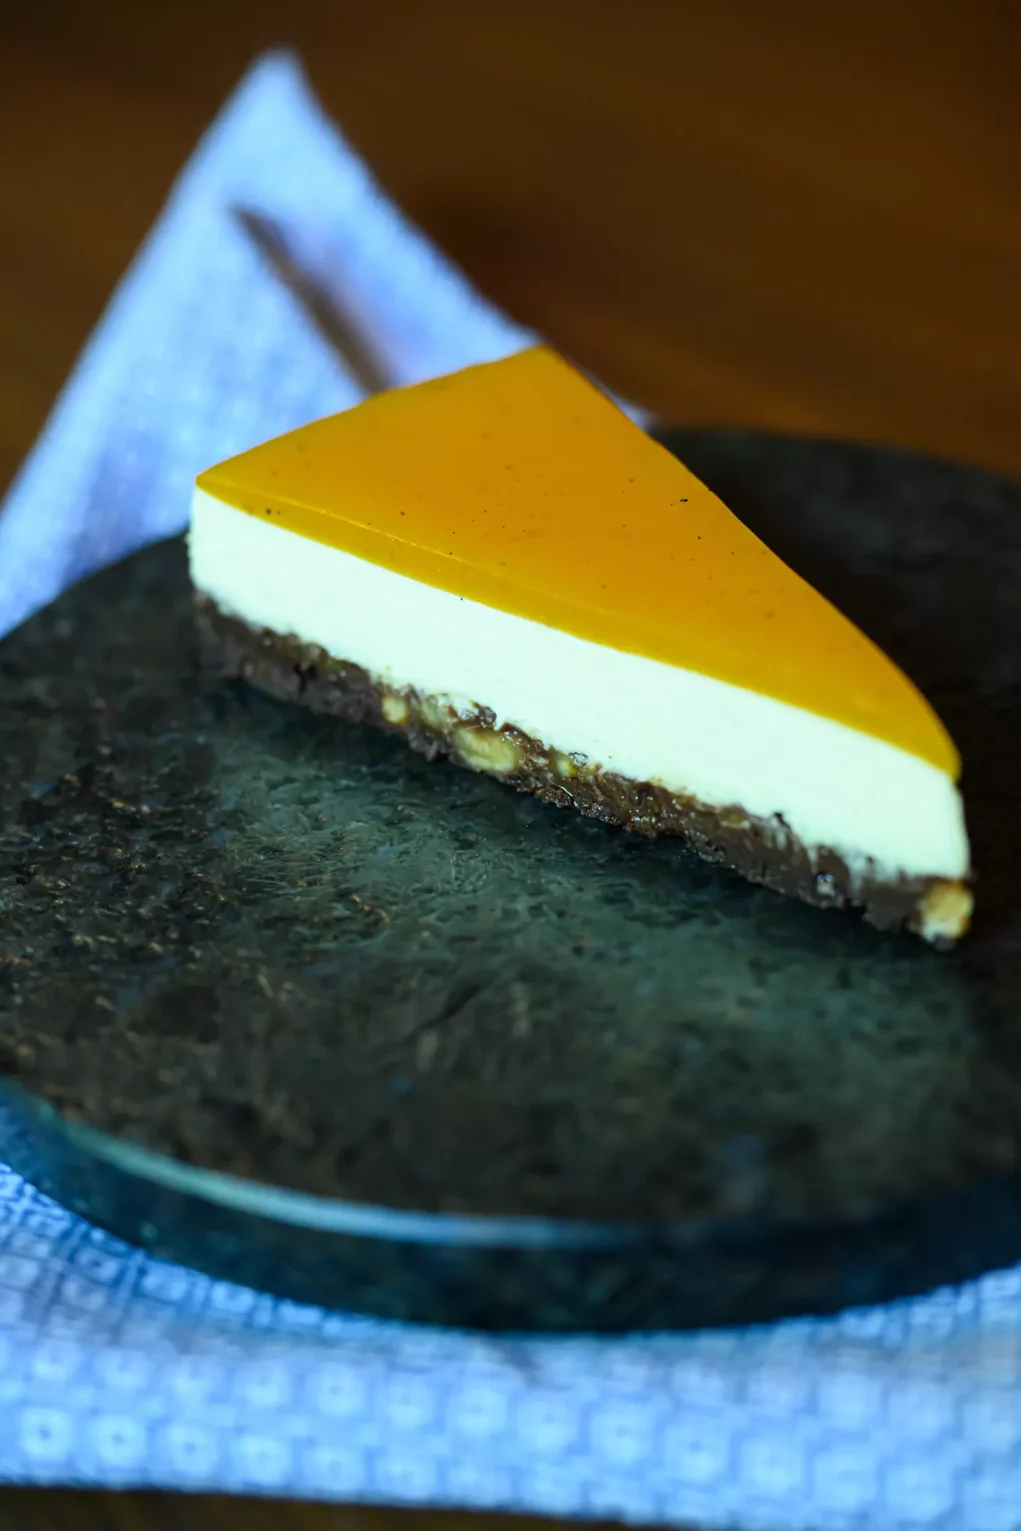 Bild auf 5min.at zeigt einen Steirer Cheesecake.